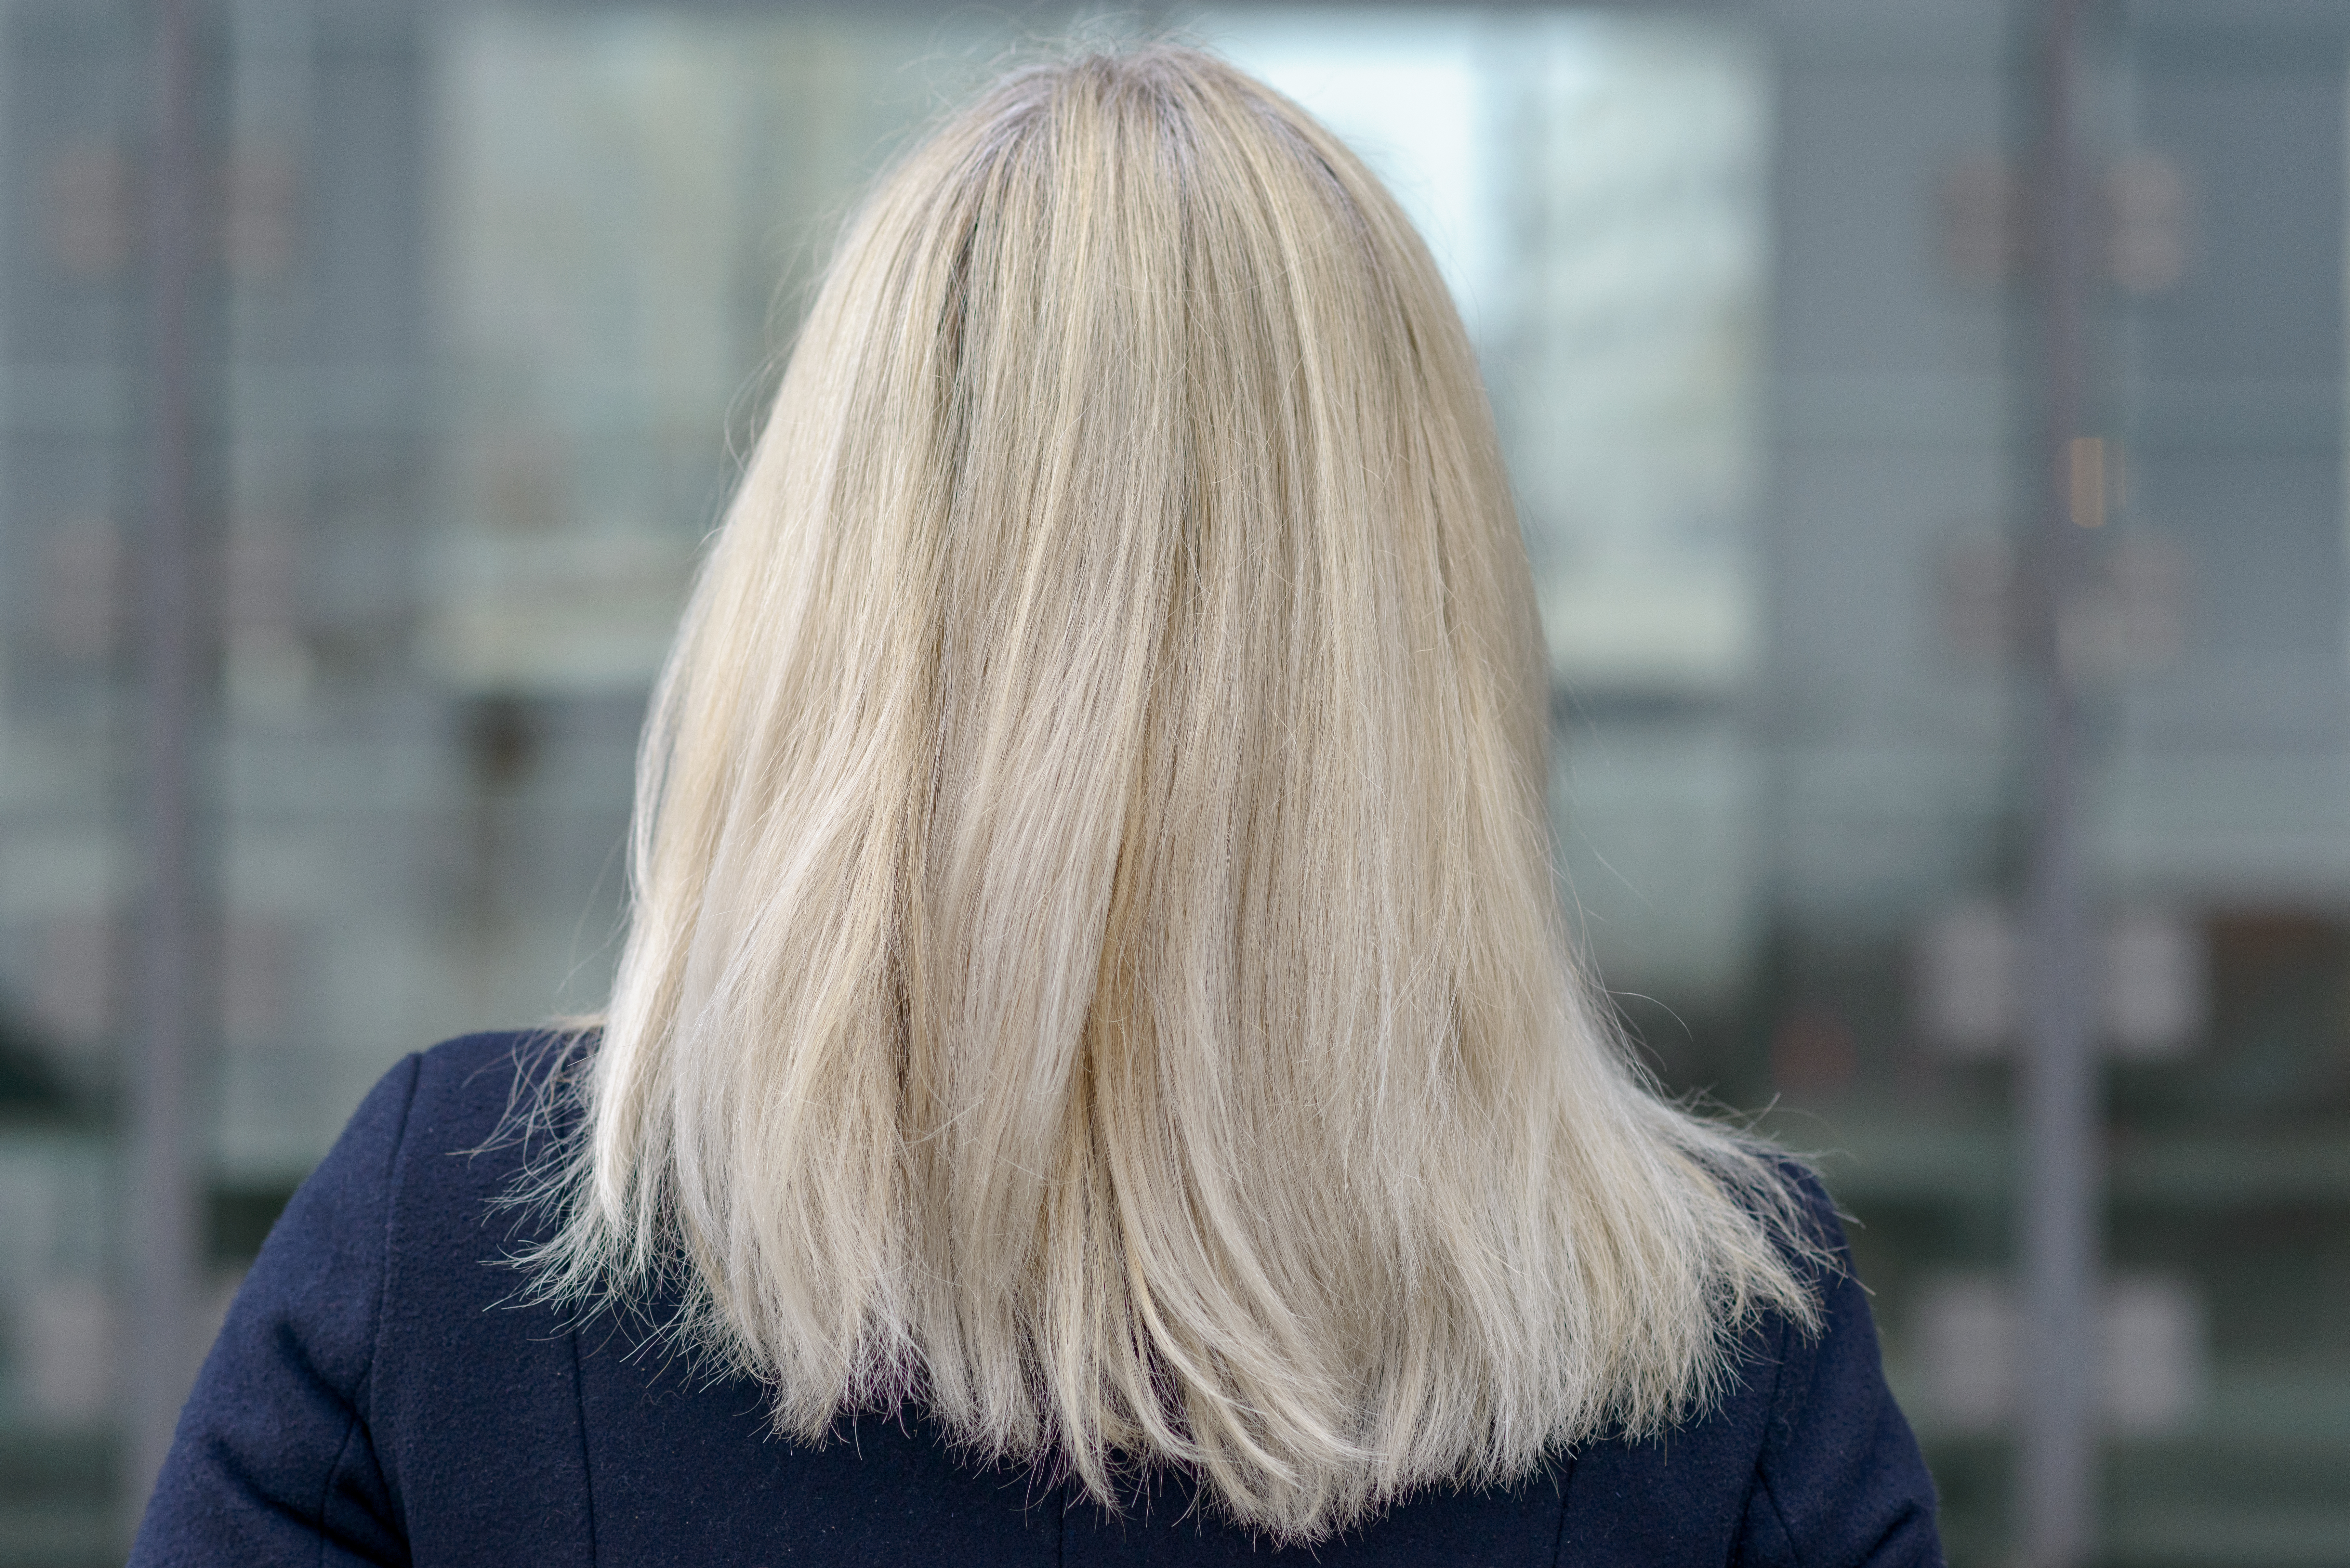 Rückansicht einer Frau mit schulterlangem blondem Haar | Quelle: Shutterstock